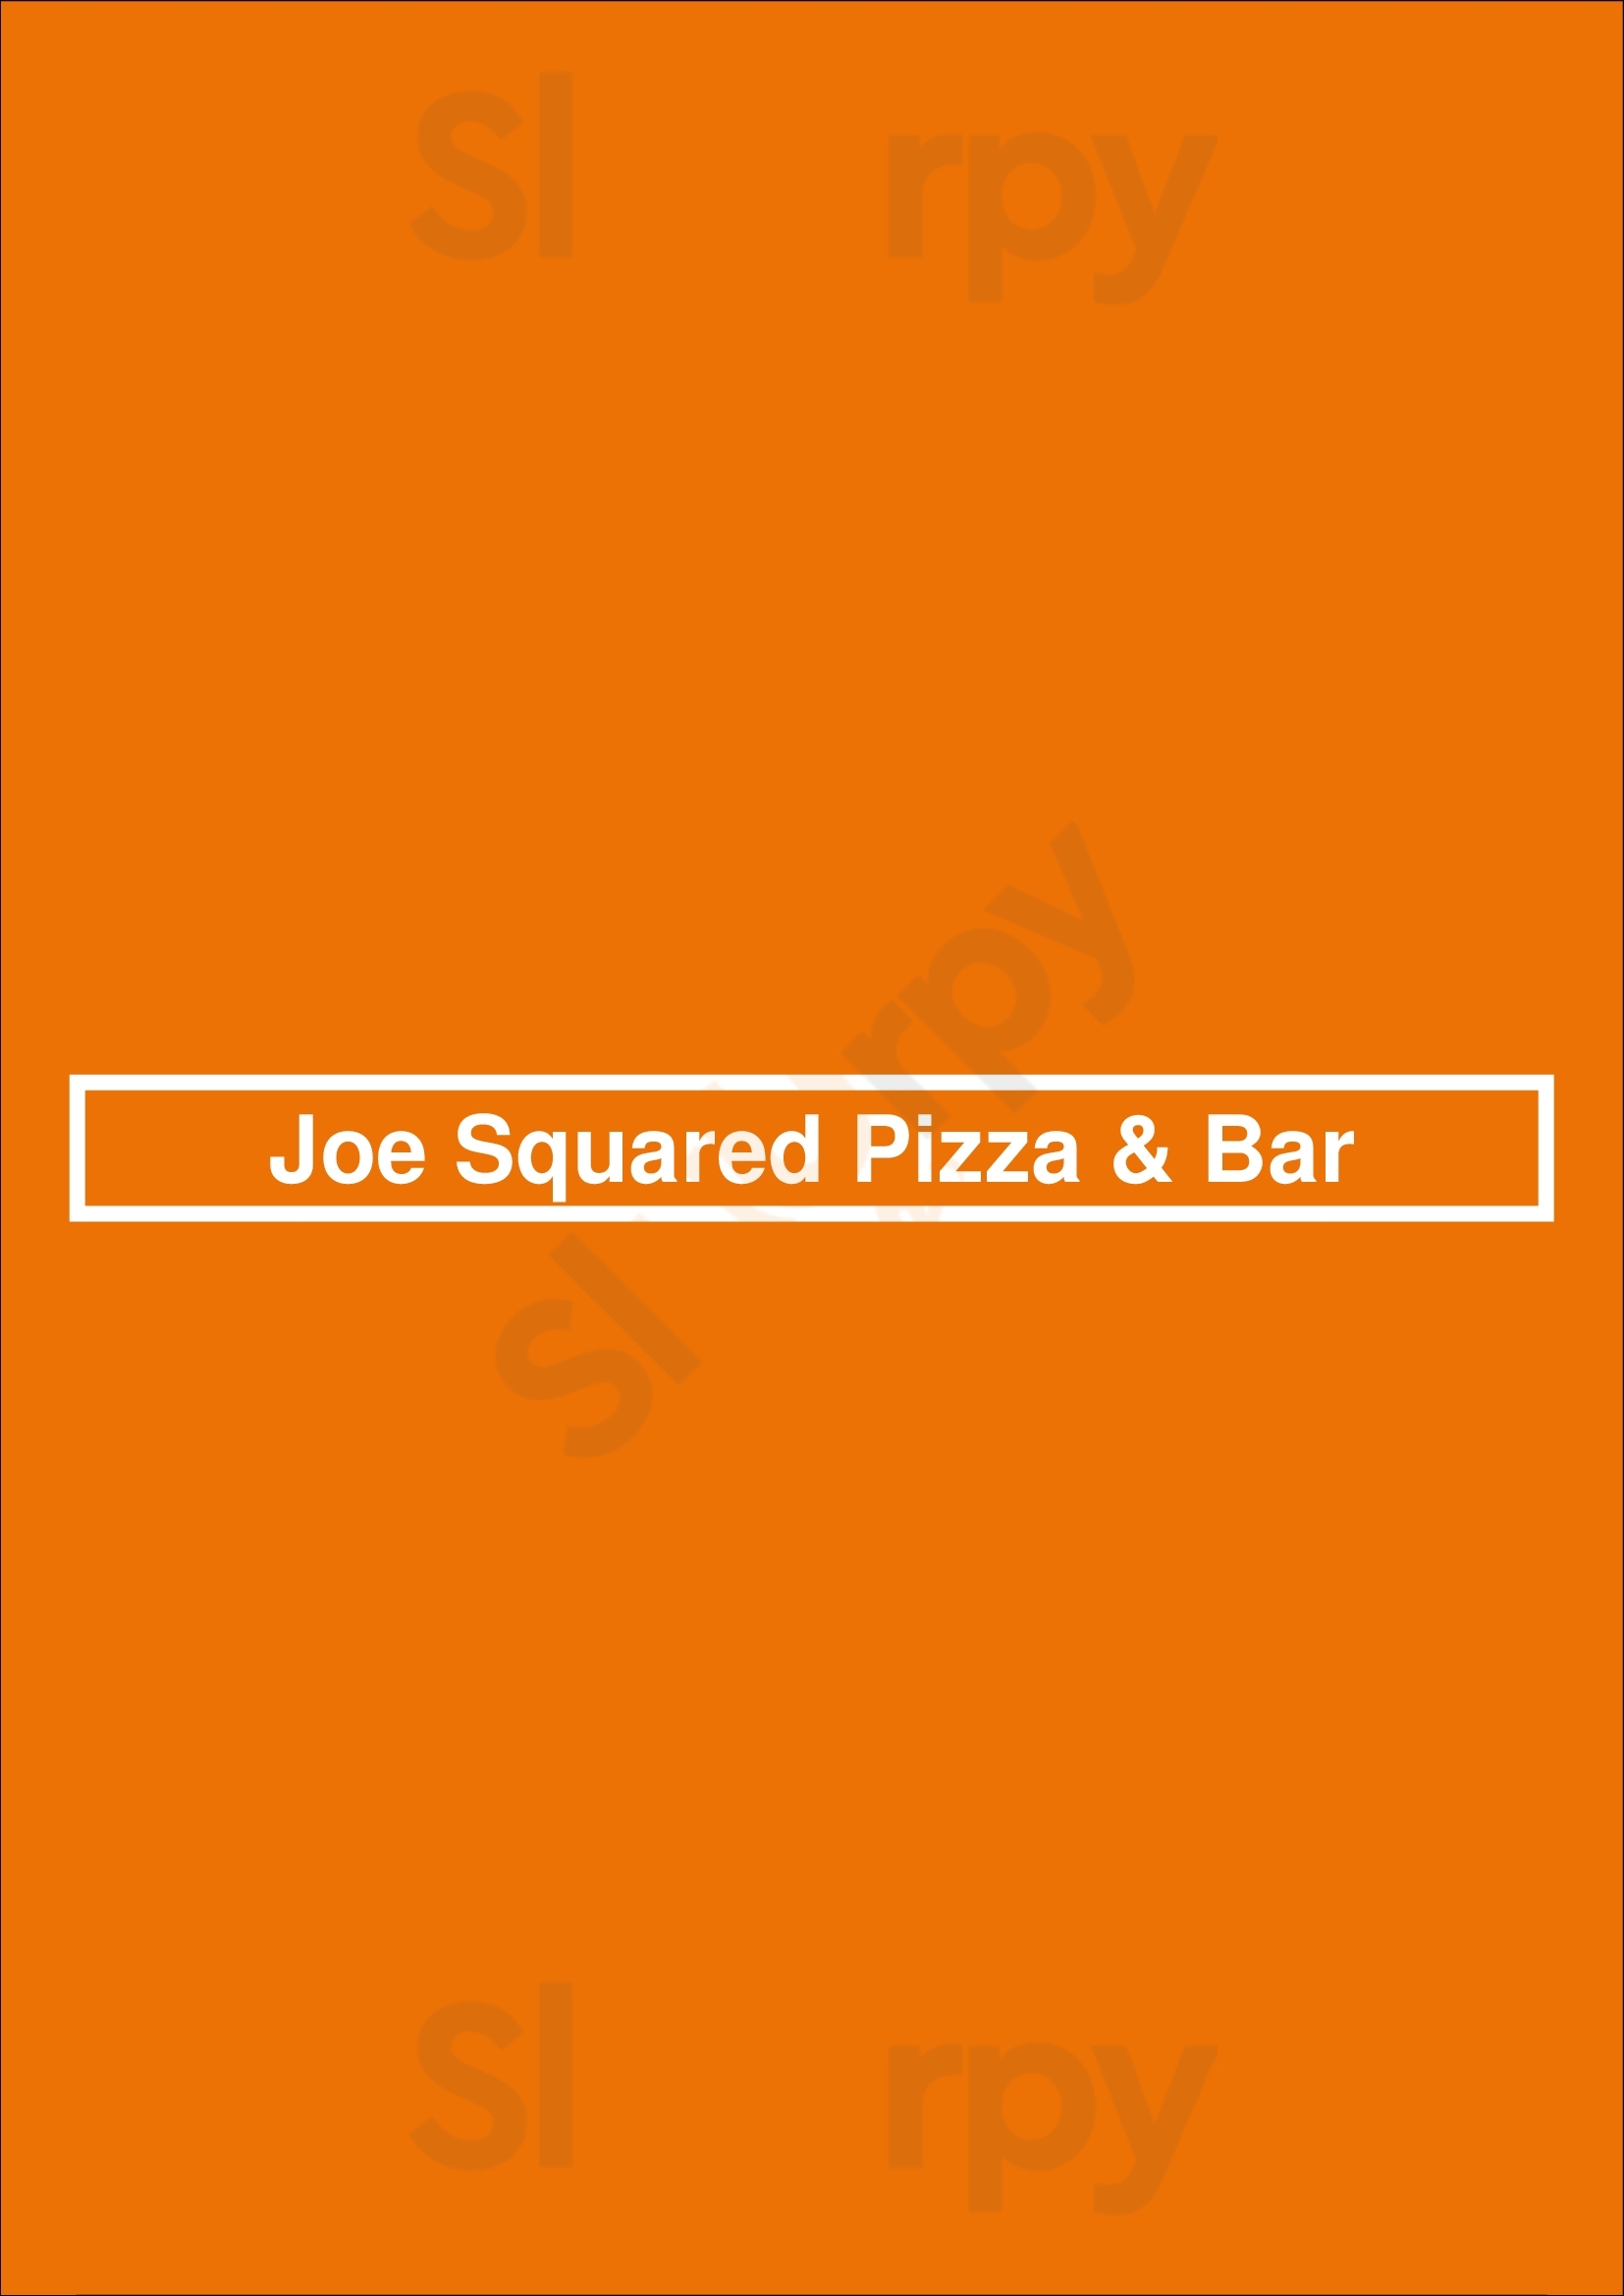 Joe Squared Pizza & Bar Baltimore Menu - 1